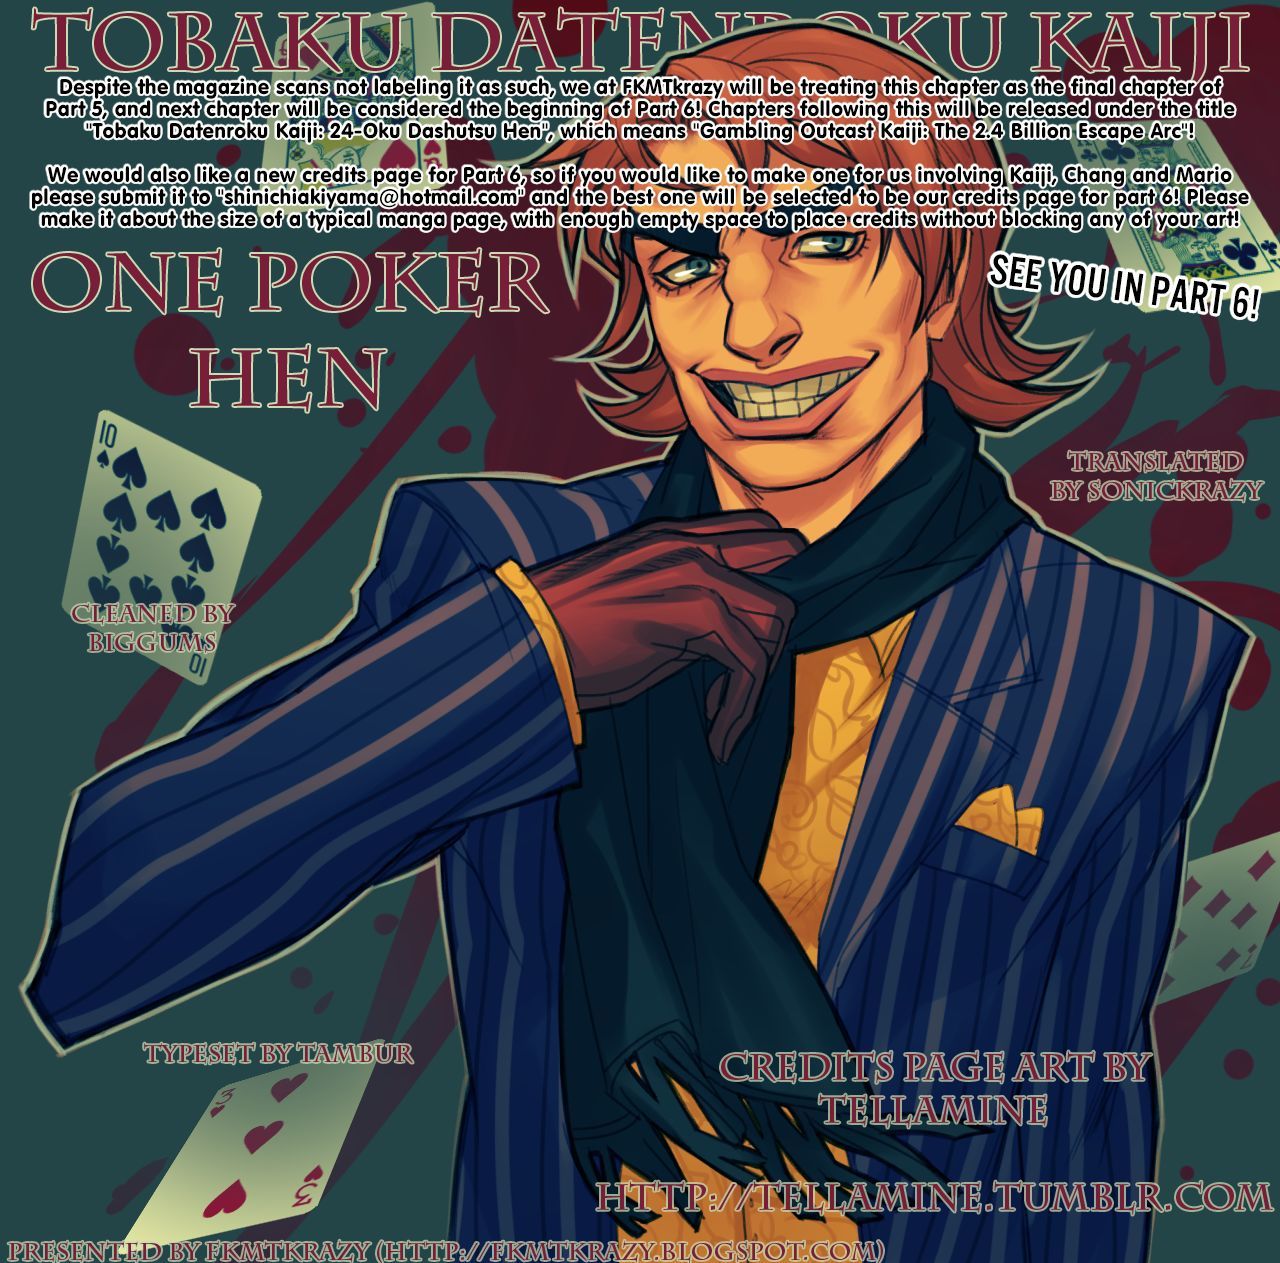 Tobaku Datenroku Kaiji - One Poker Hen 255